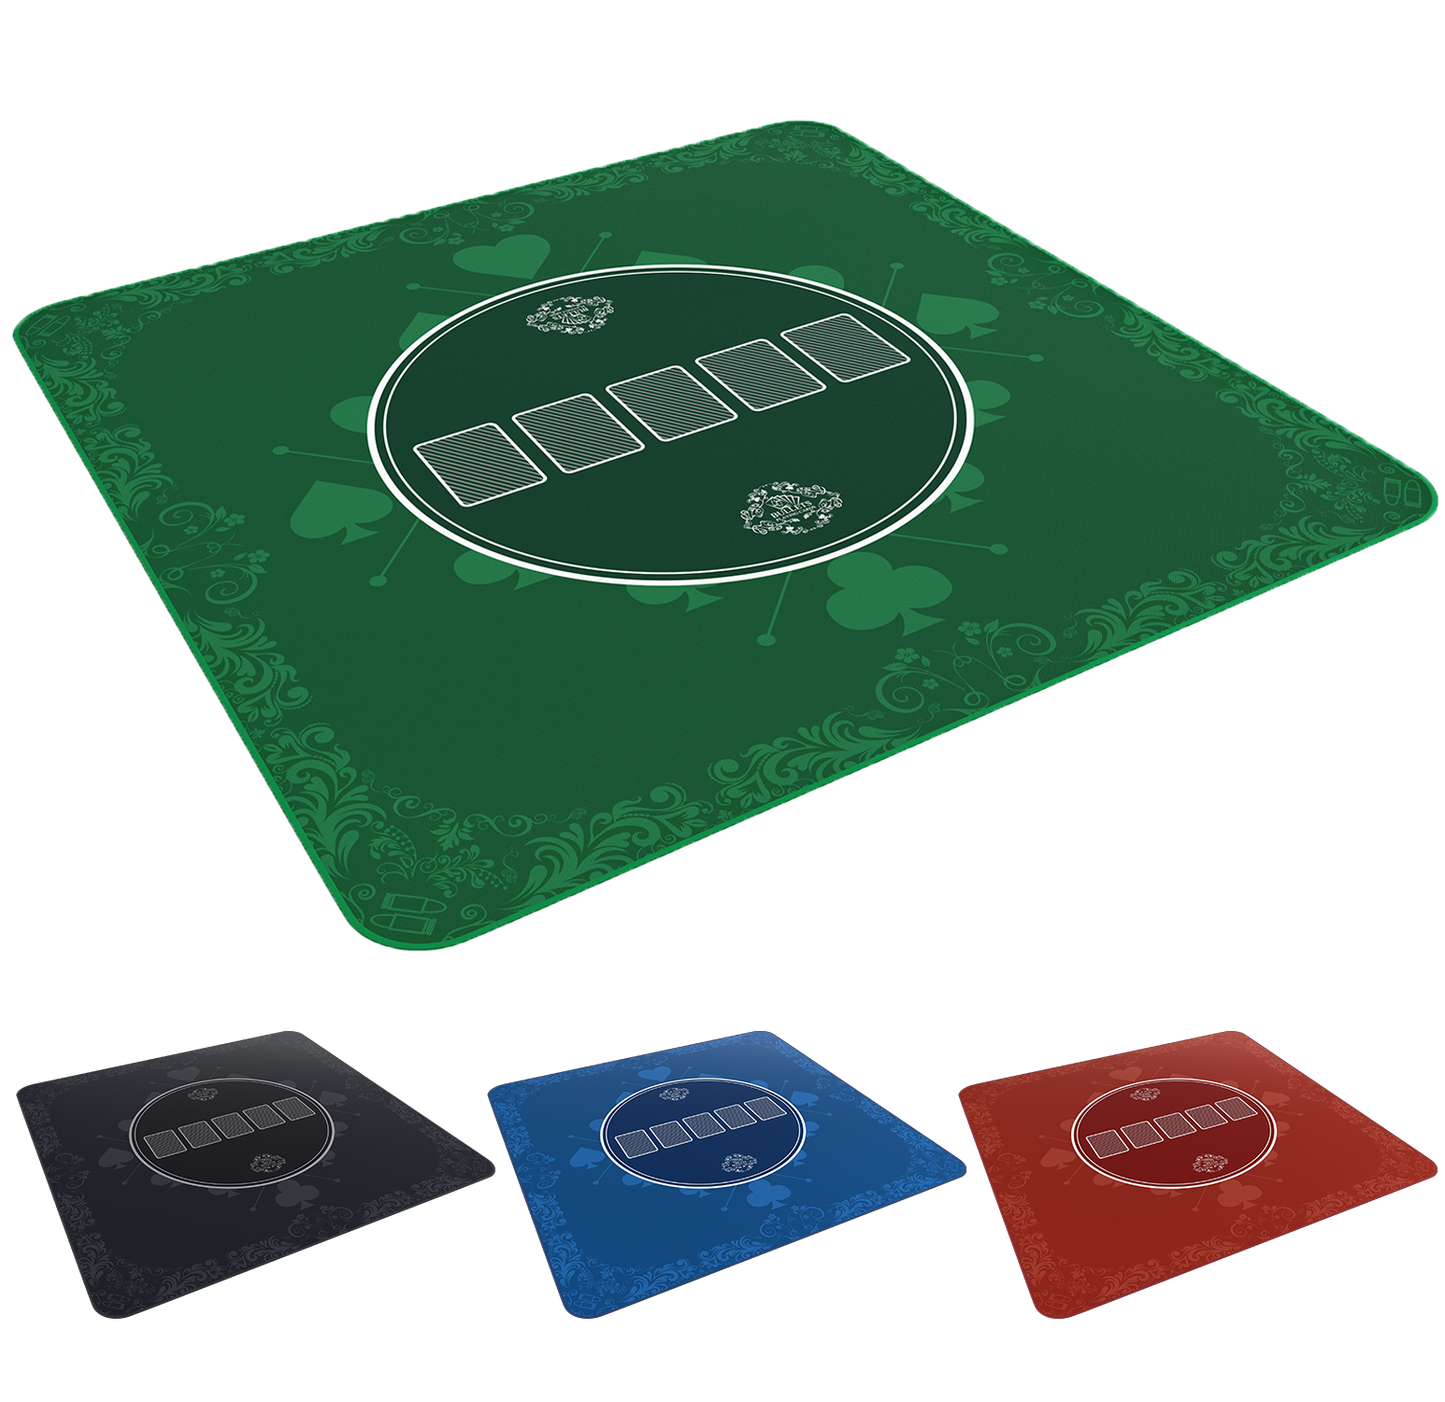 Poker mat 80x80 cm, square, green, designer "Heads-Up"